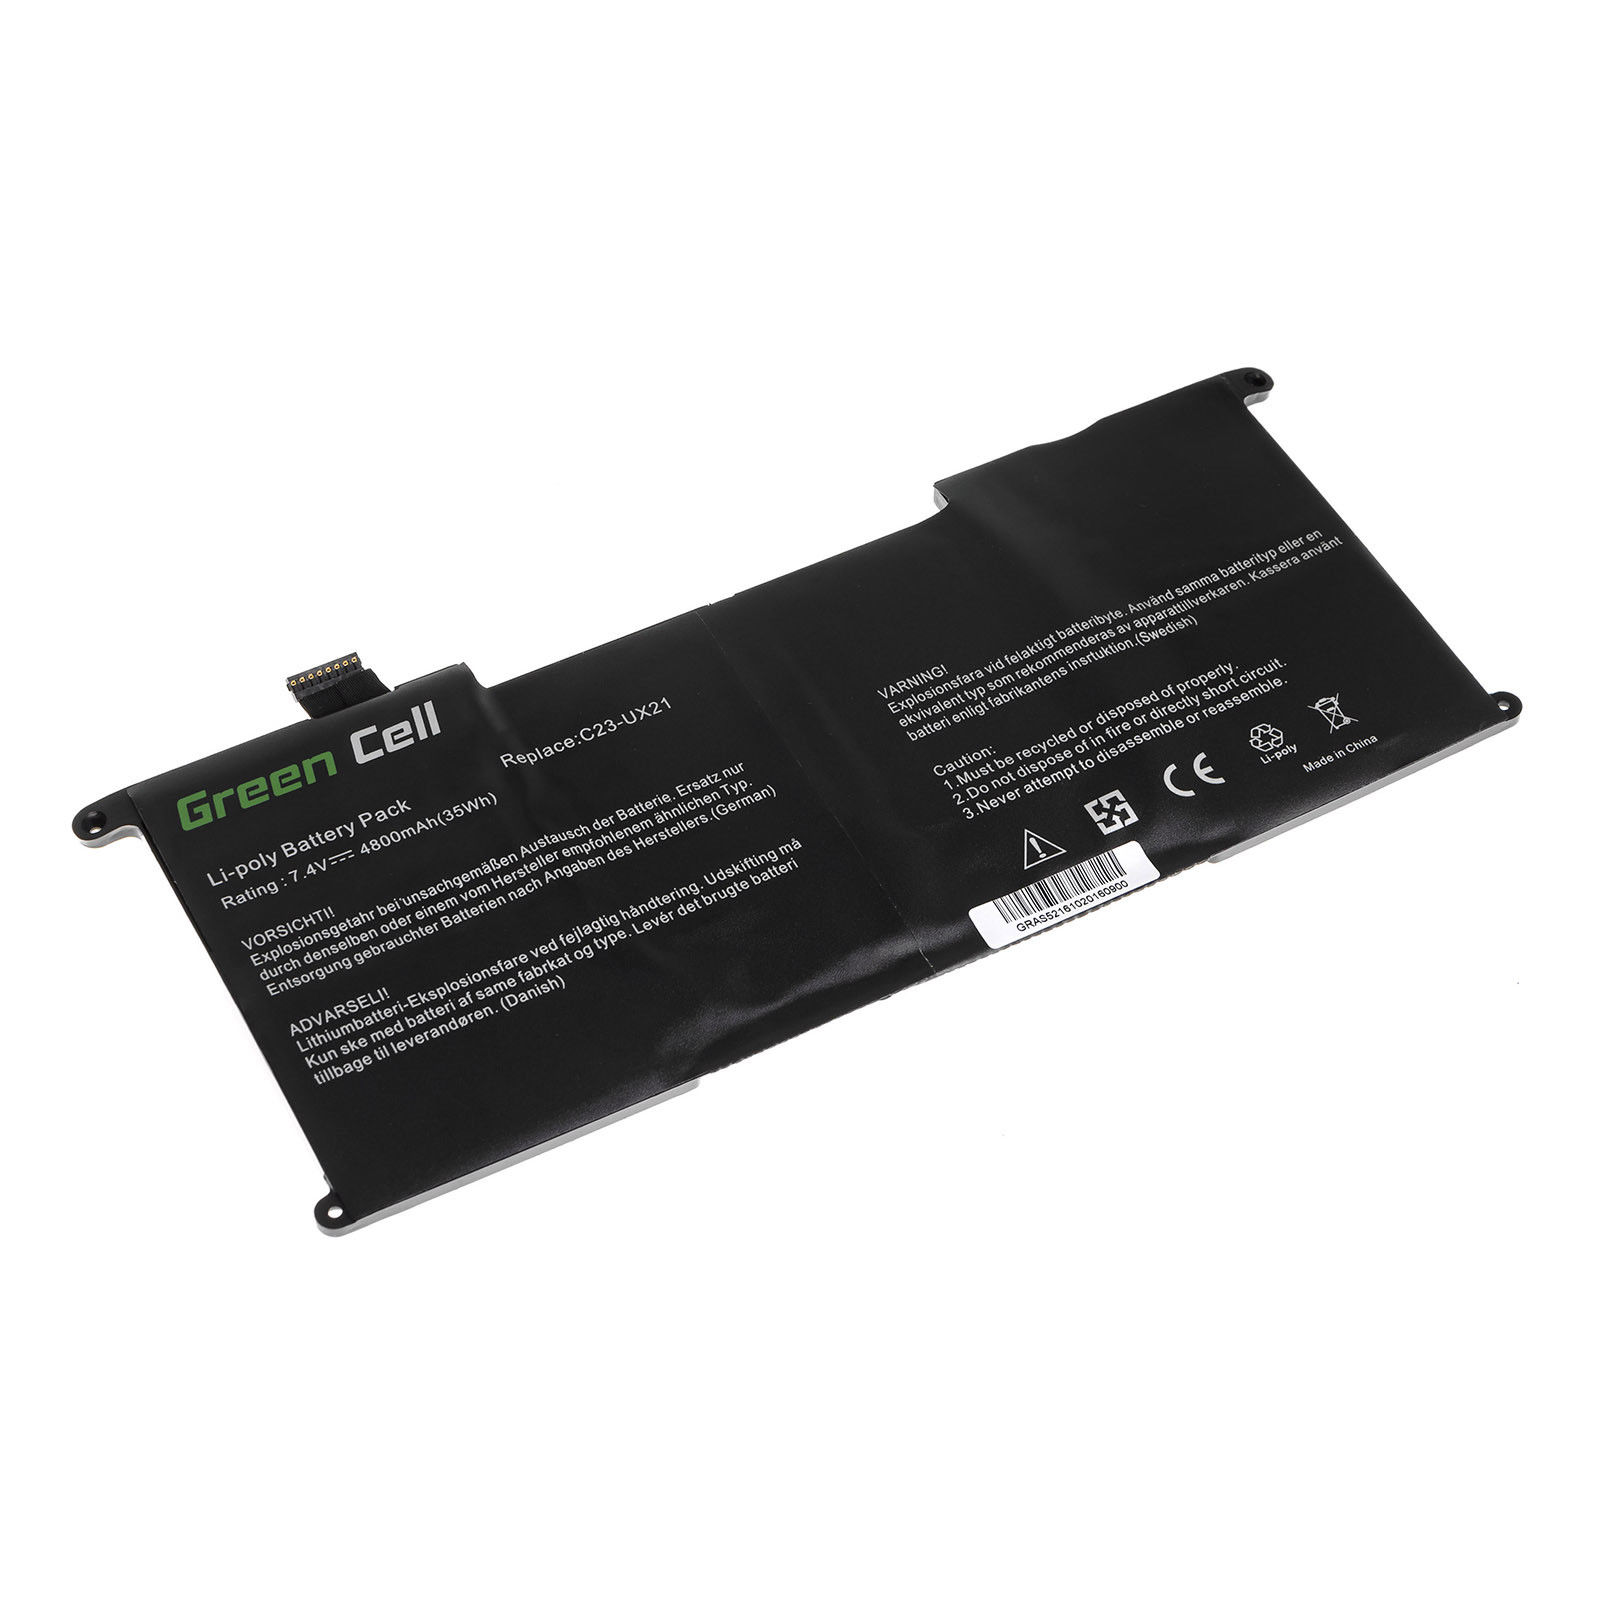 μπαταρία για Asus UX21 Ultrabook UX21 UX21A UX21E UX21E-DH52 C23U συμβιβάσιμος - Πατήστε στην εικόνα για να κλείσει